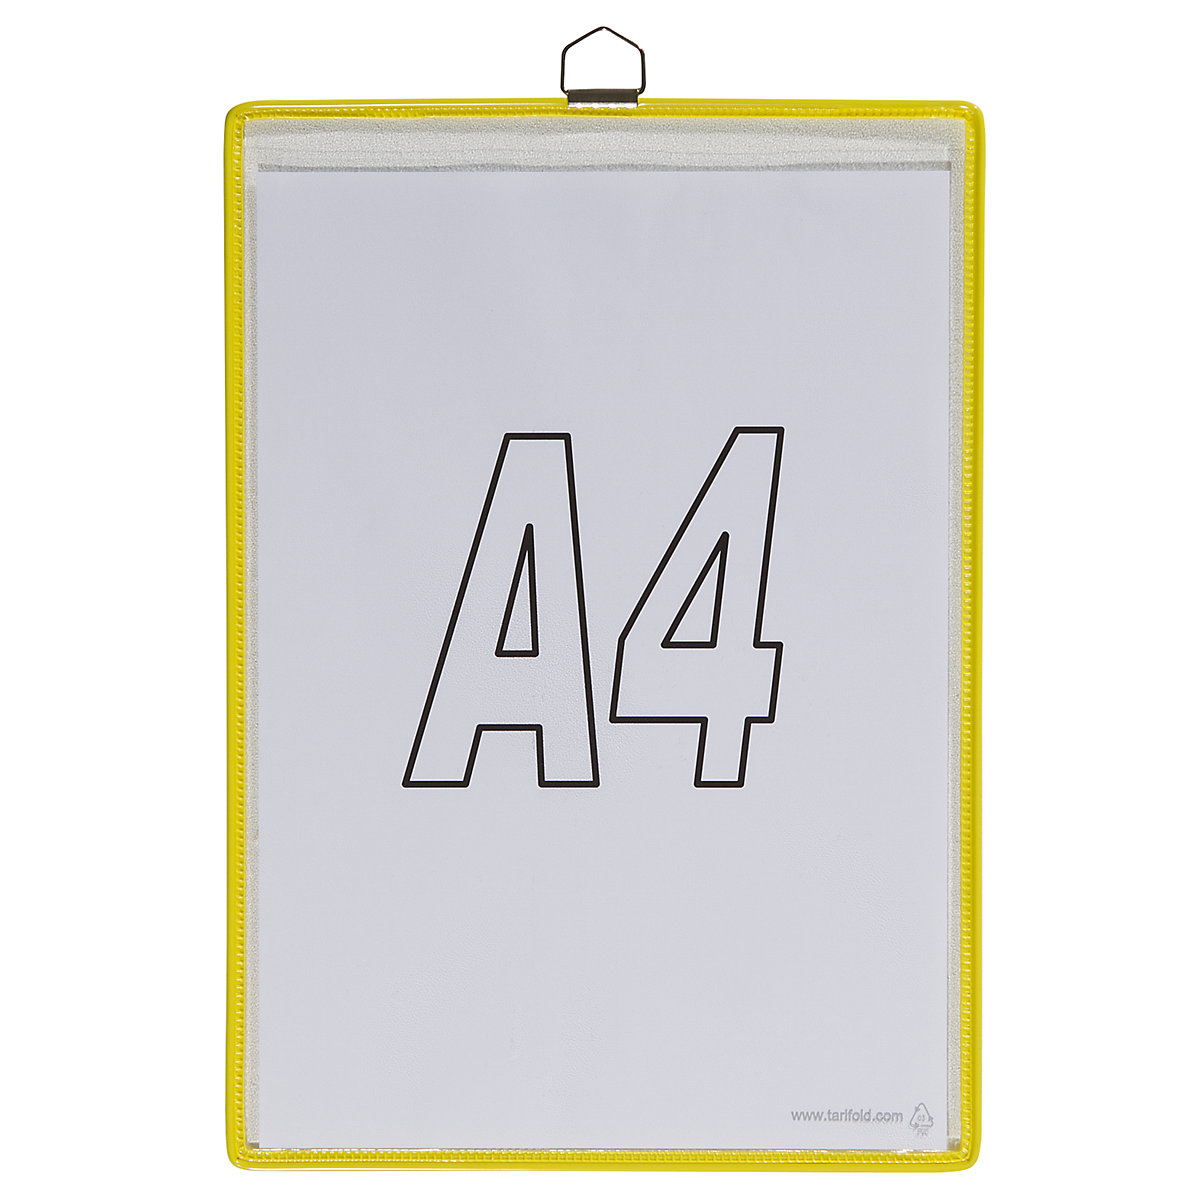 Hänge-Klarsichttasche Tarifold, für Format DIN A4, gelb, VE 10 Stk